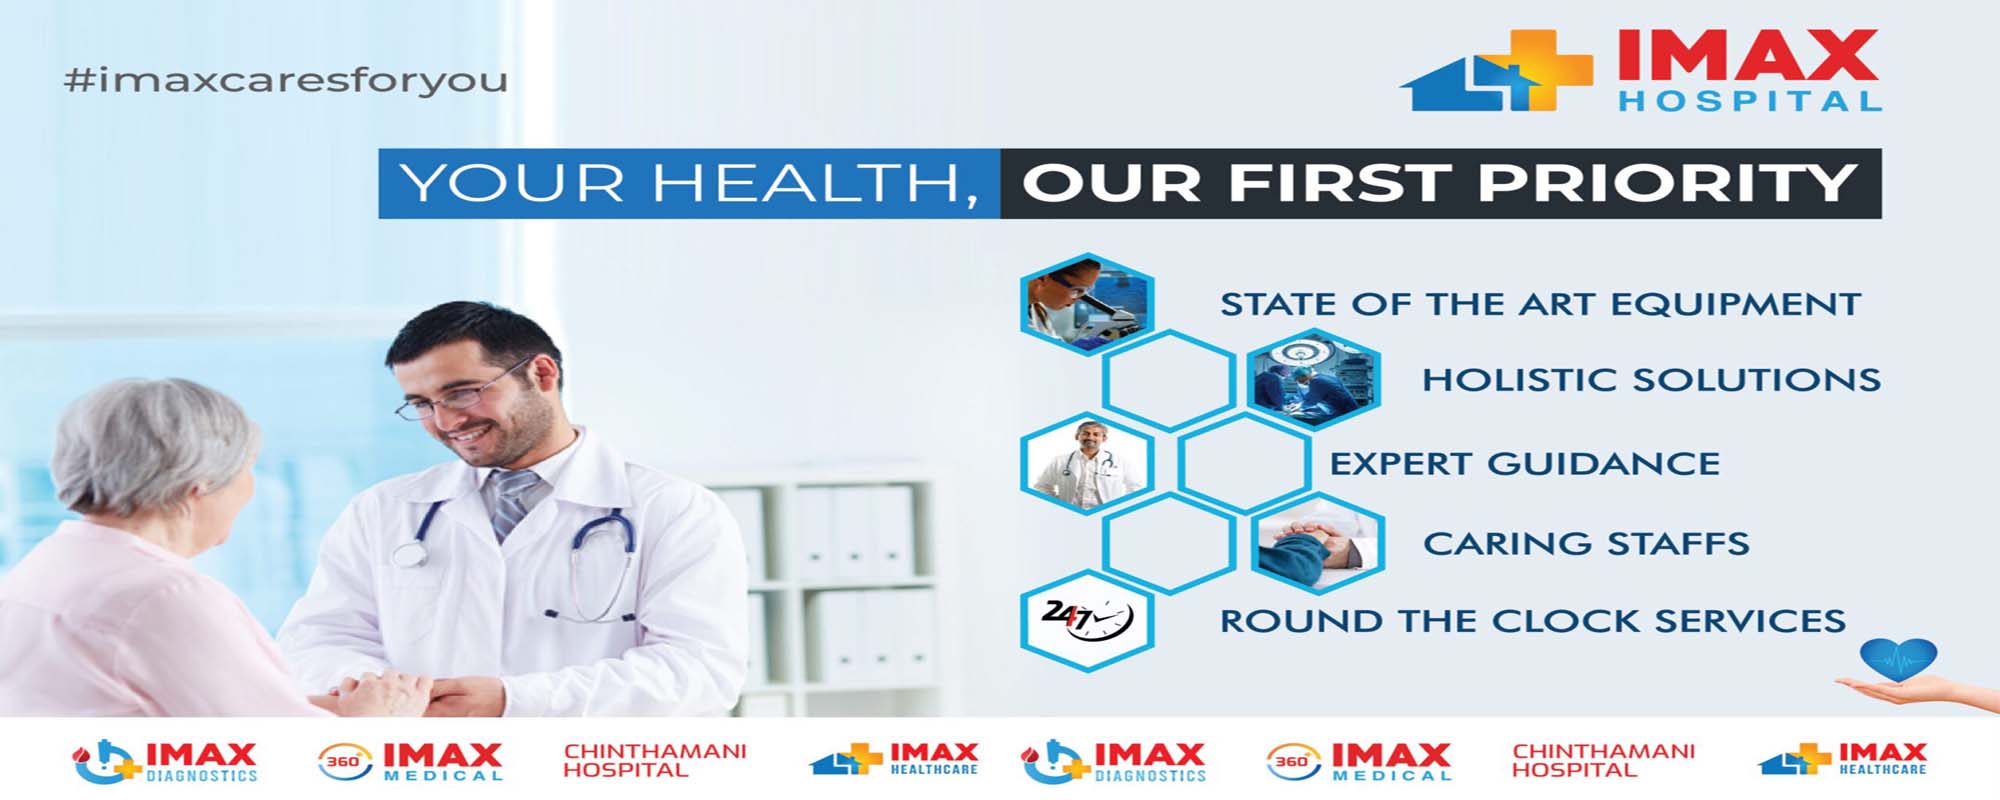 Dr.Pranav Shankar - Max Healthcare | LinkedIn